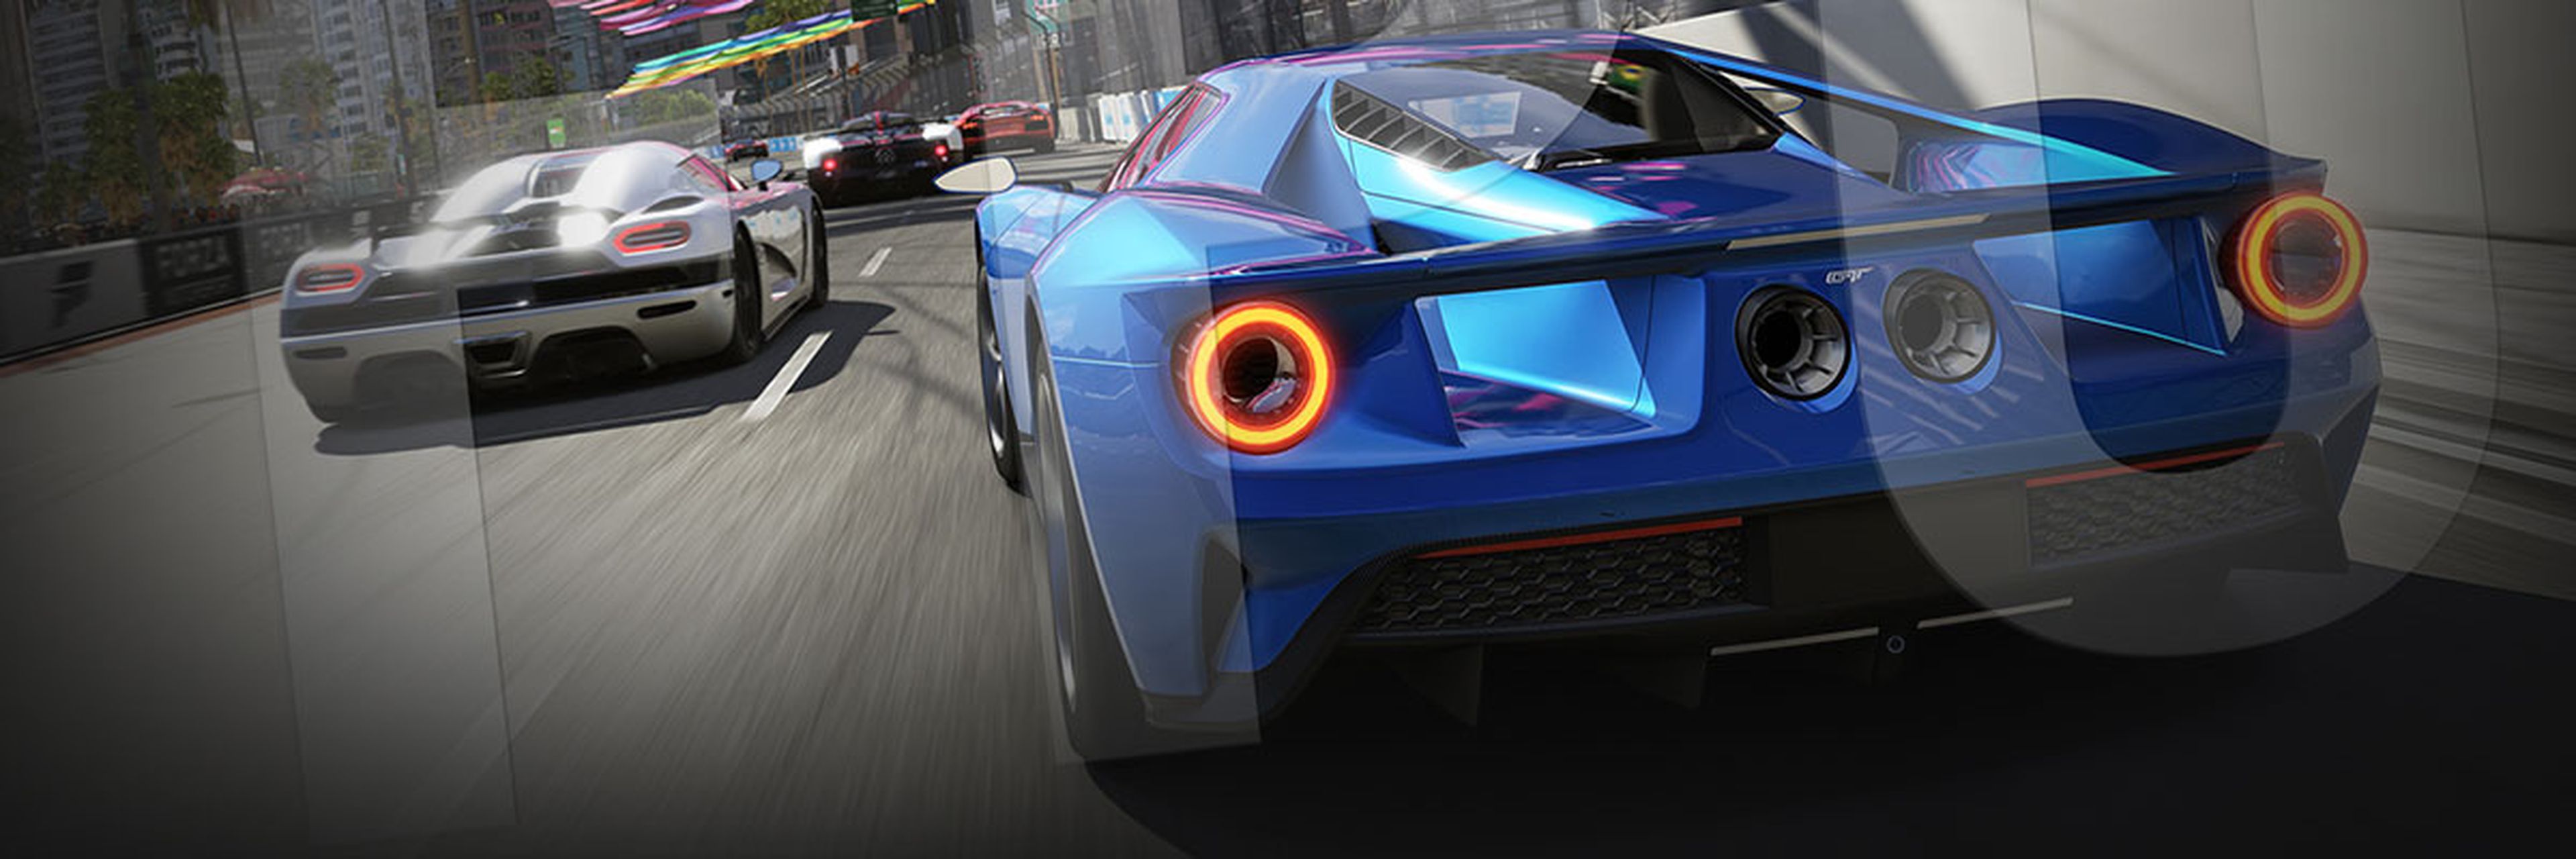 Nuevos detalles de Forza Motorsport 6